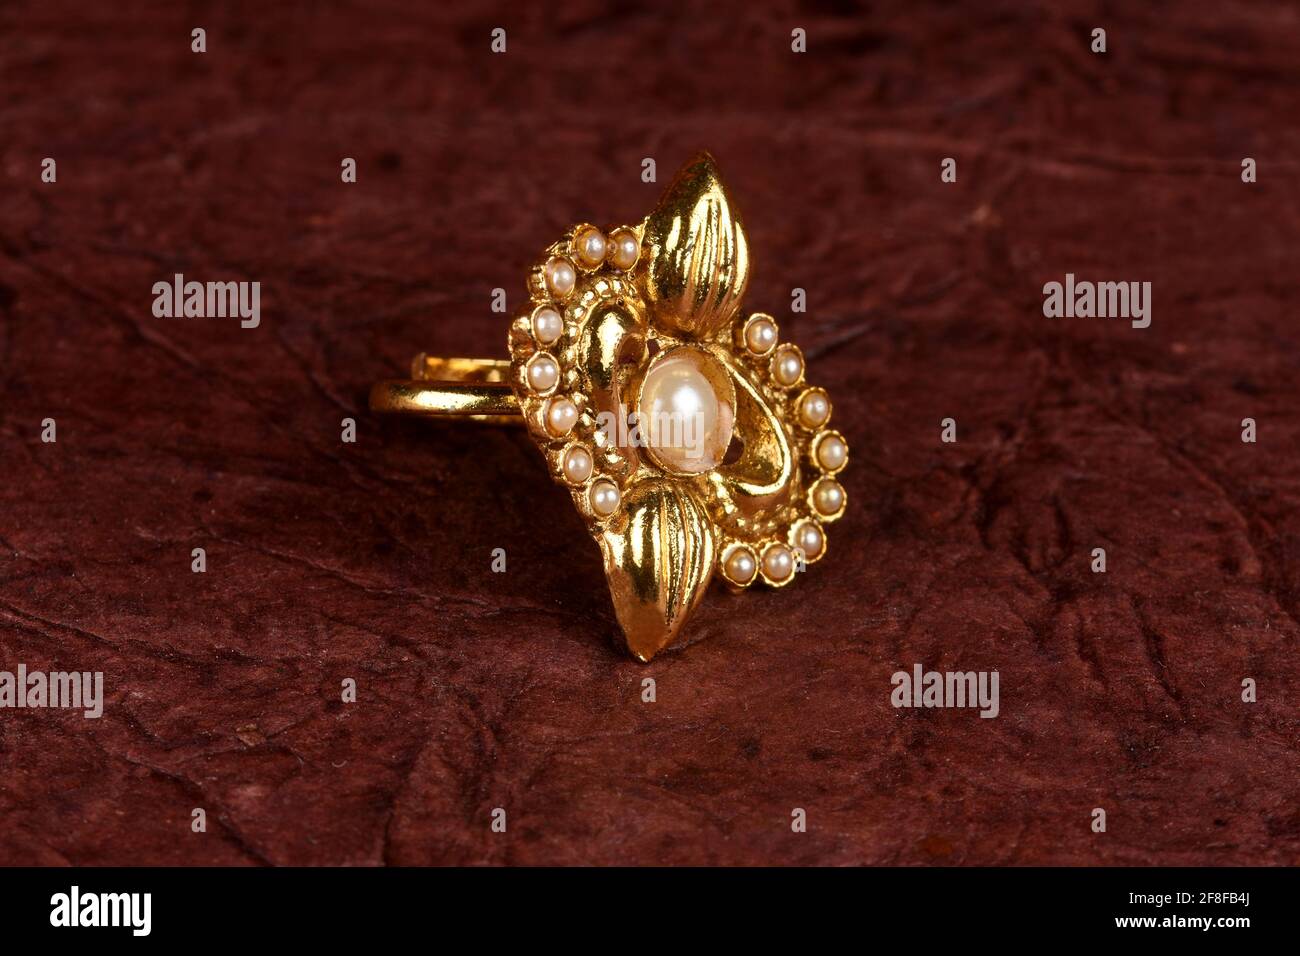 Gold Ring Designs : महिलाओं को खूब पसंद आ रही हैं यह सोने की अंगूठी की  बेहतरीन डिजाइन, आप भी जरूर ट्राई करिए !